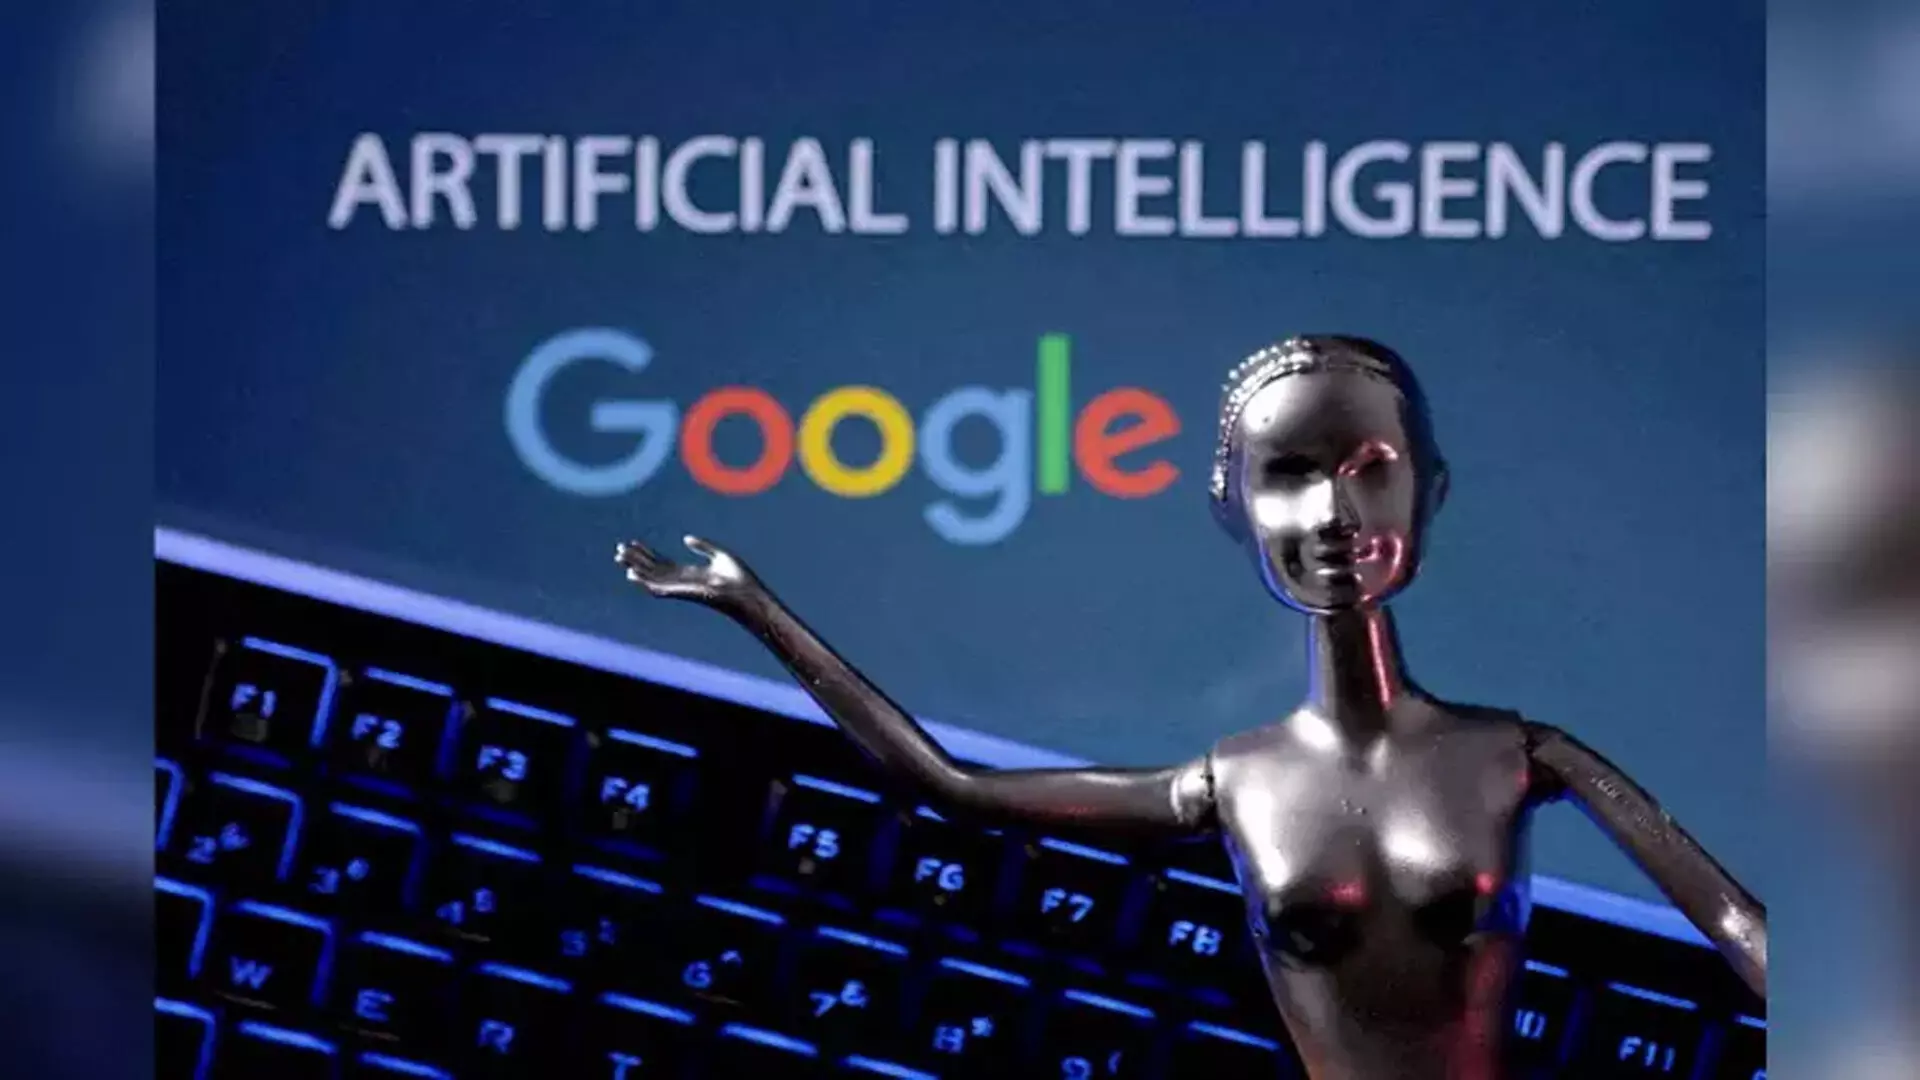 FT रिपोर्ट के अनुसार, Google AI-संचालित सर्च इंजन के लिए शुल्क लेने की योजना बना रहा